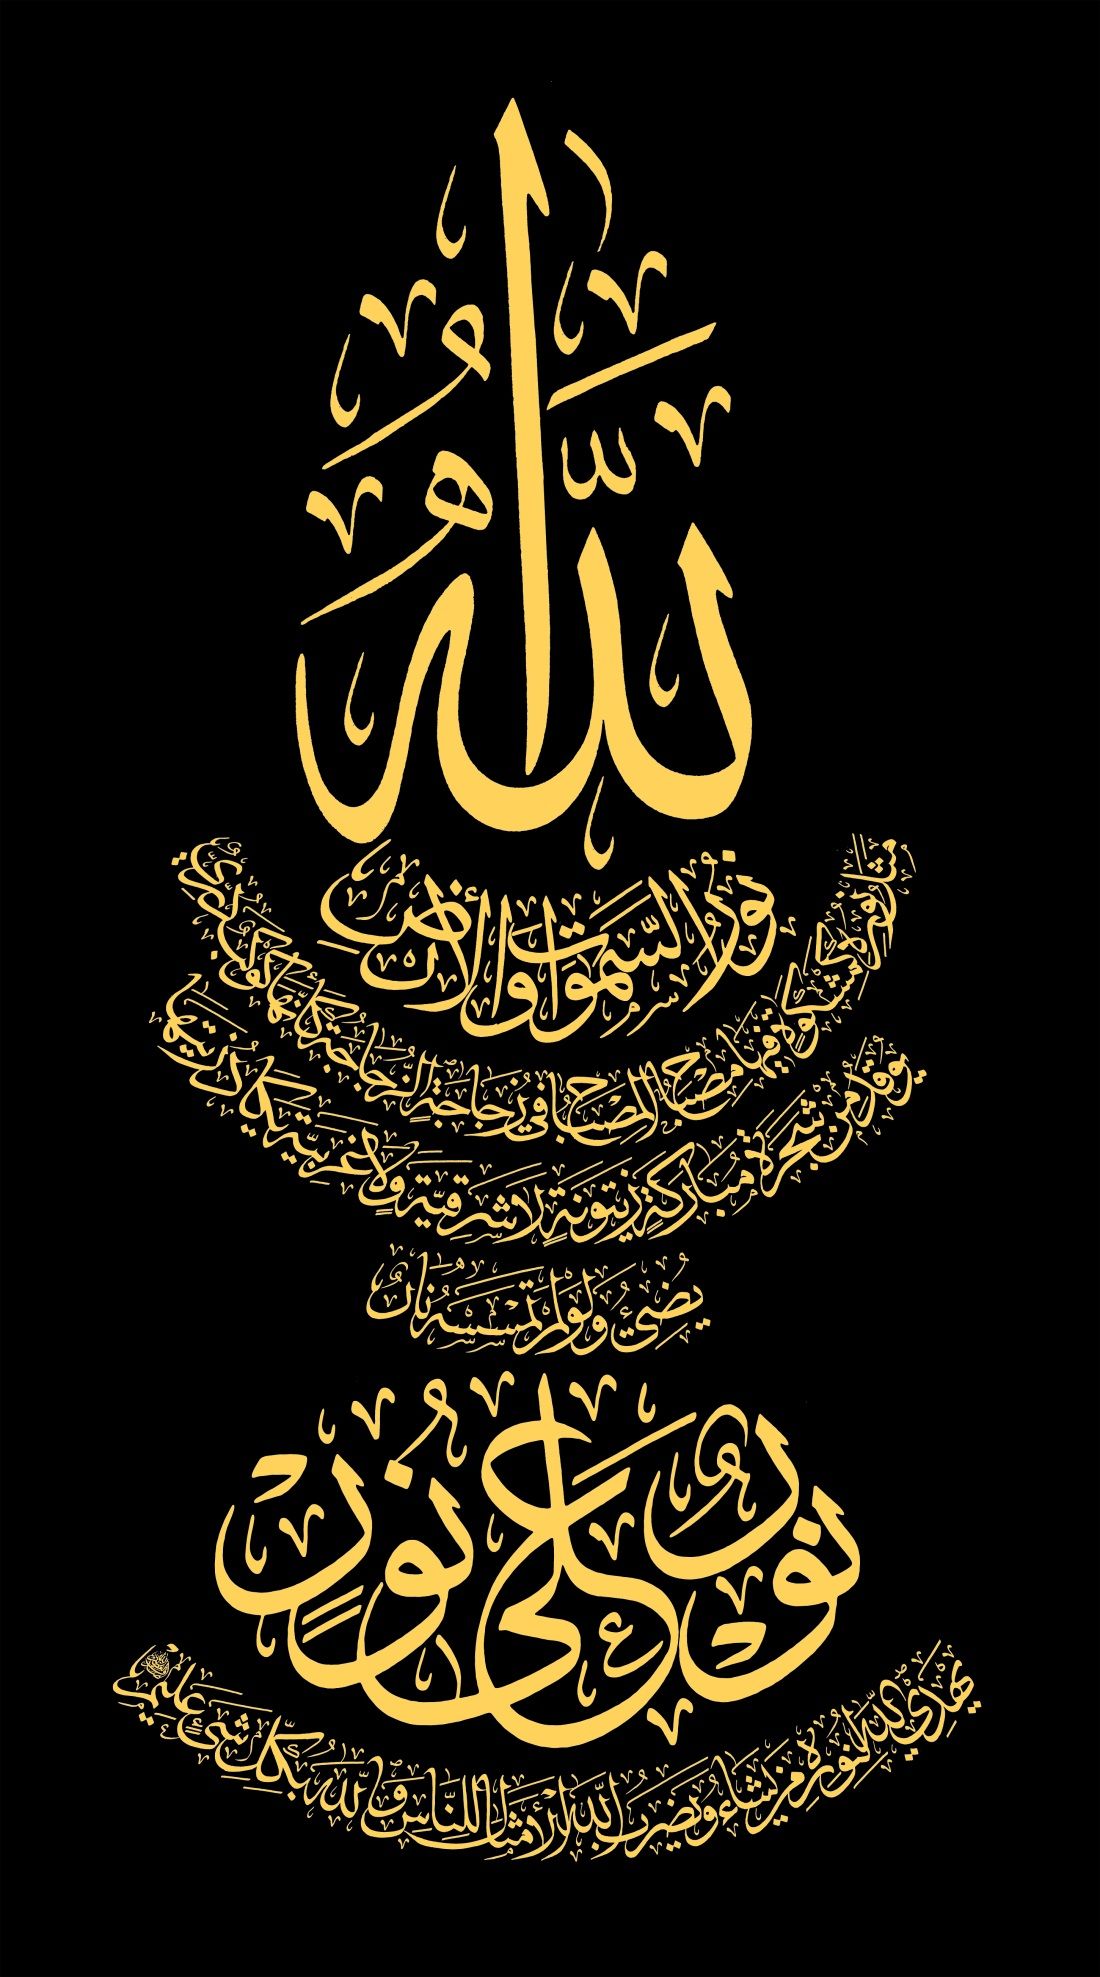 1669 8 صور خلفيات اسلامية - صور دينية للفيس بوك رجاء متالقة